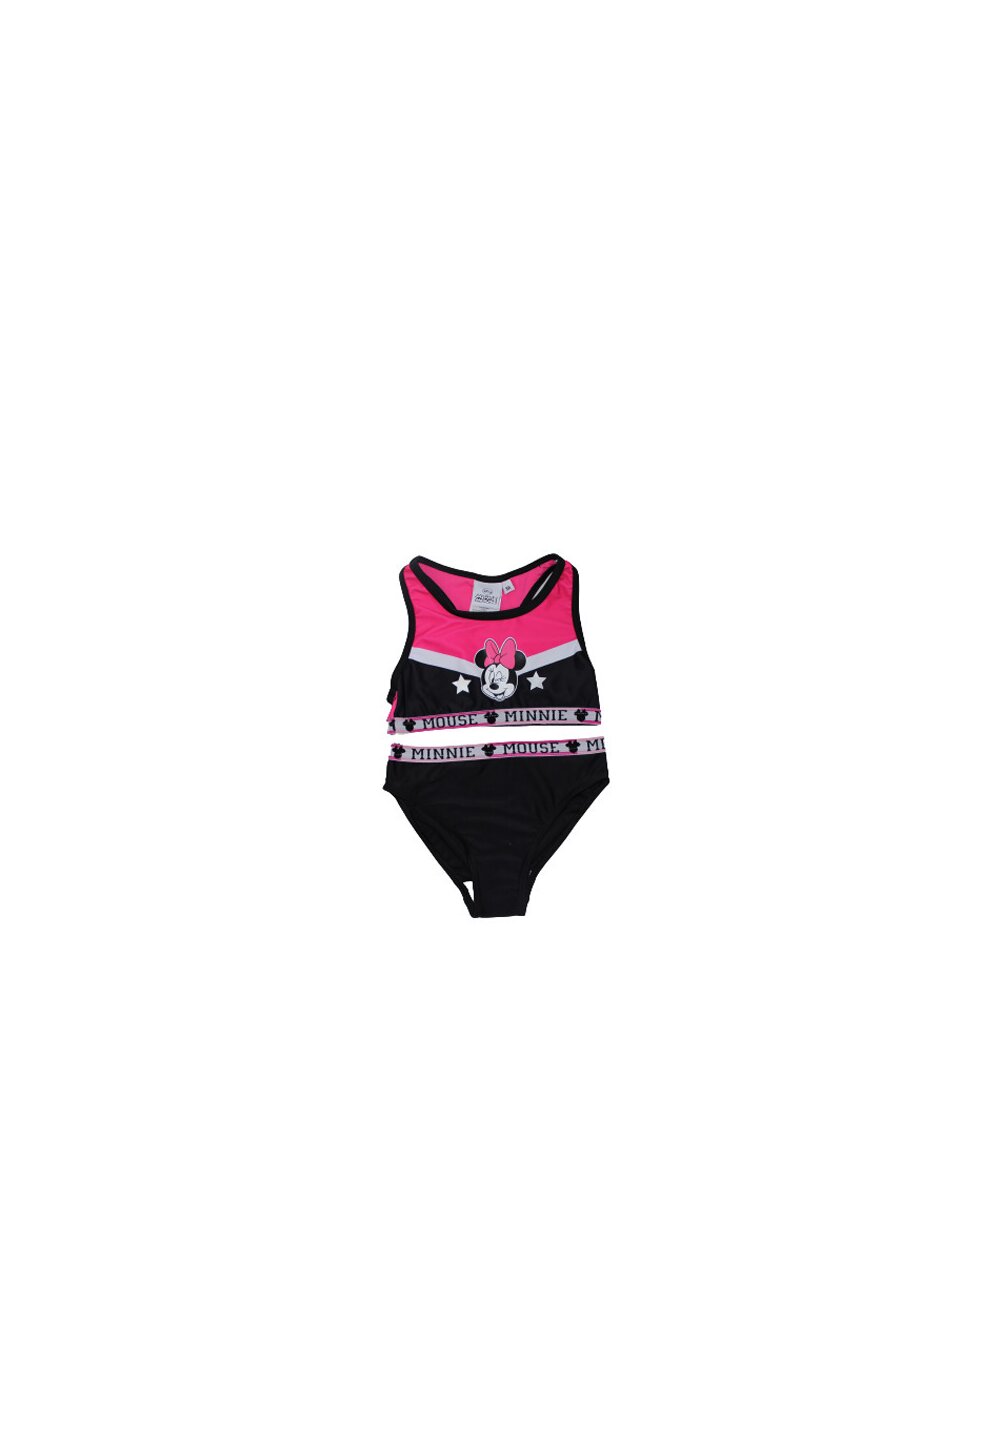 Costum de baie cu bustiera, Minnie, negru cu roz fuxia DISNEY